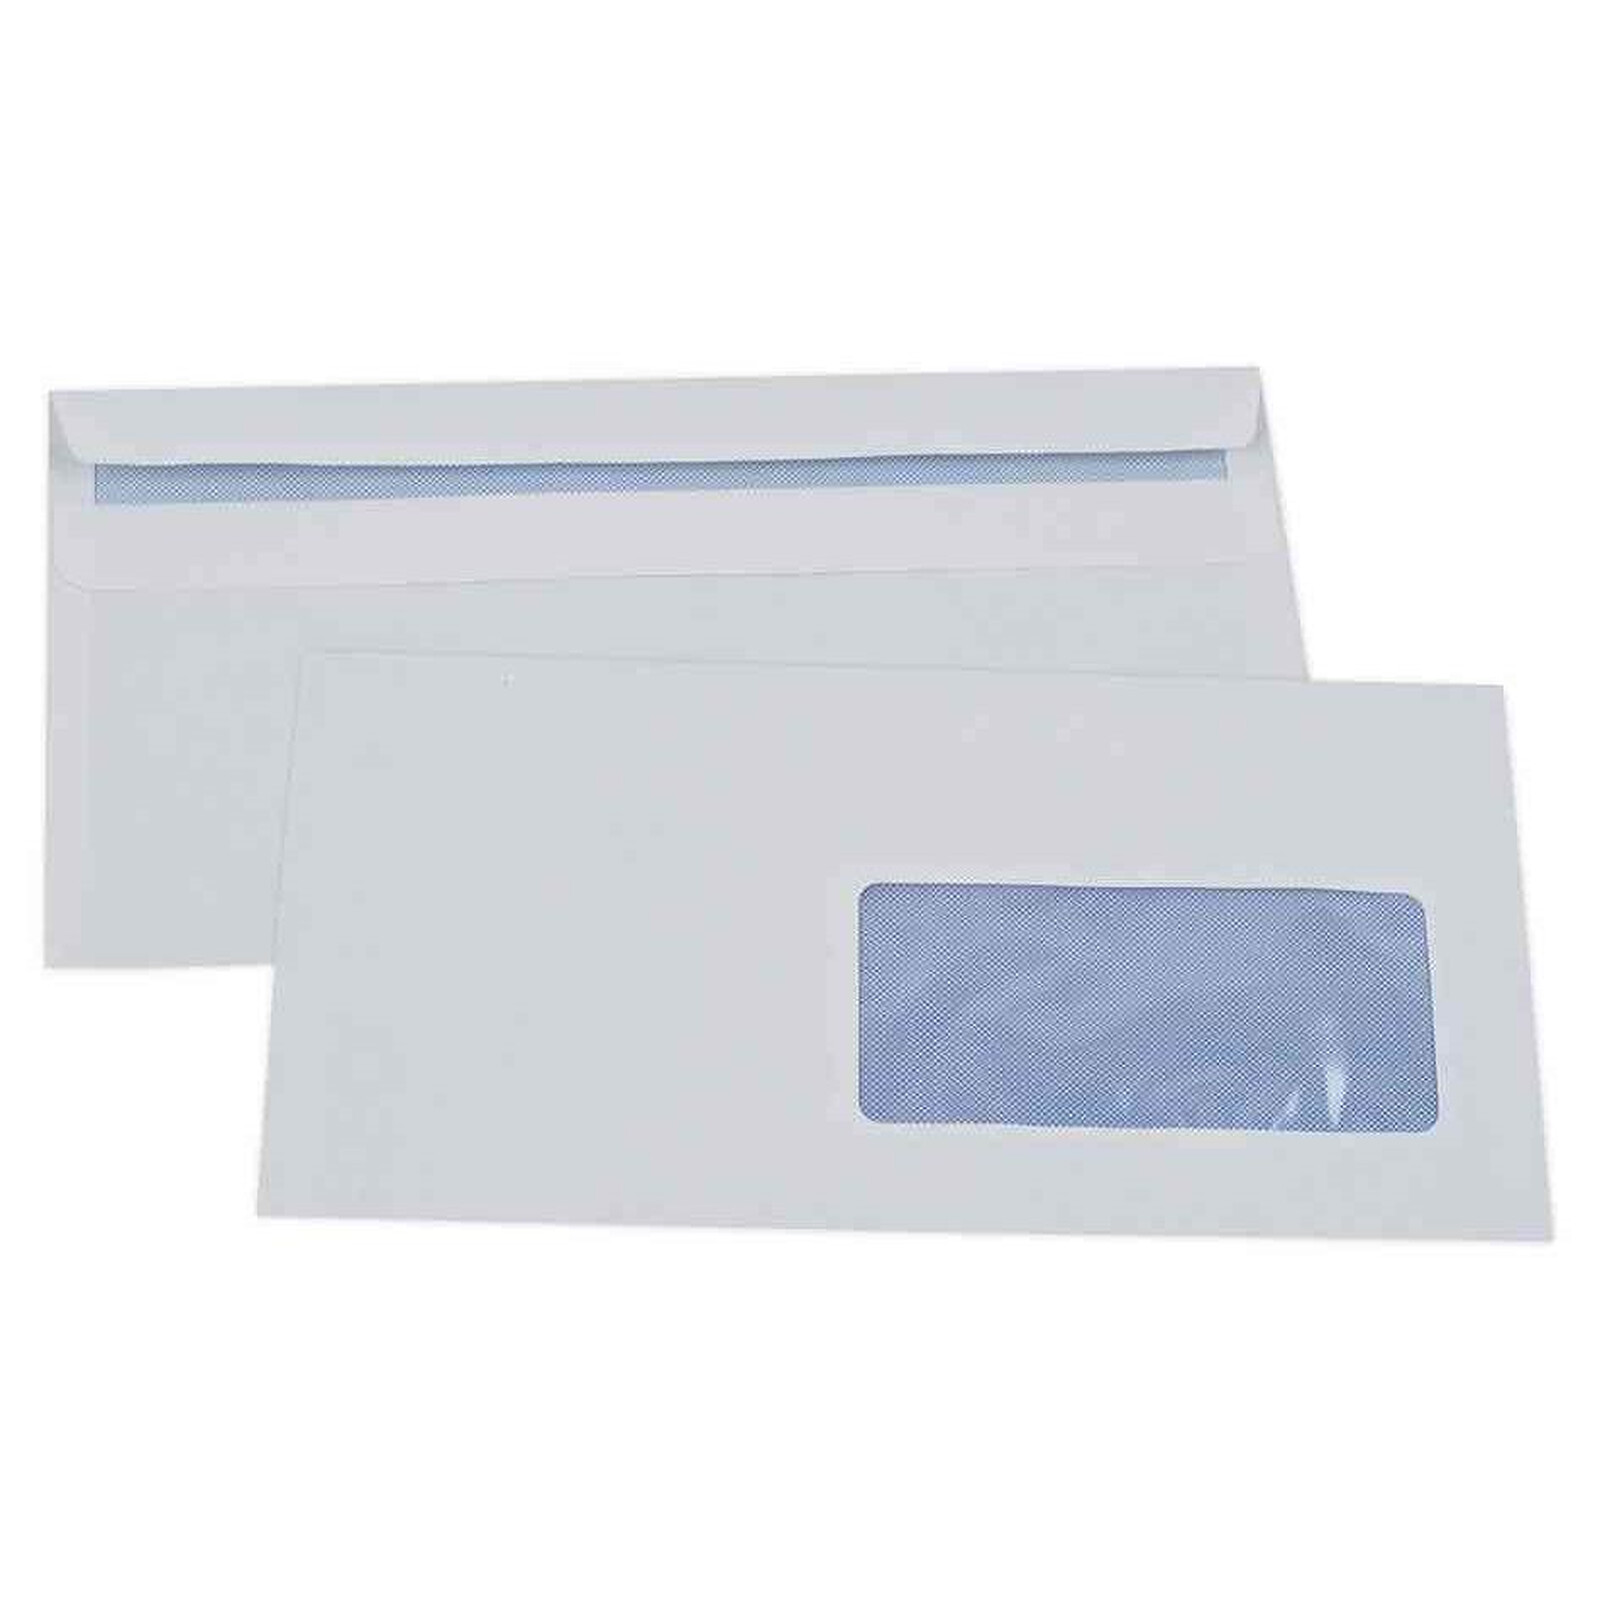 Boite de 500 enveloppes extra blanches 100% recyclées DL 110x220 90 g/m²  fenêtre 45x100 bande de protection 